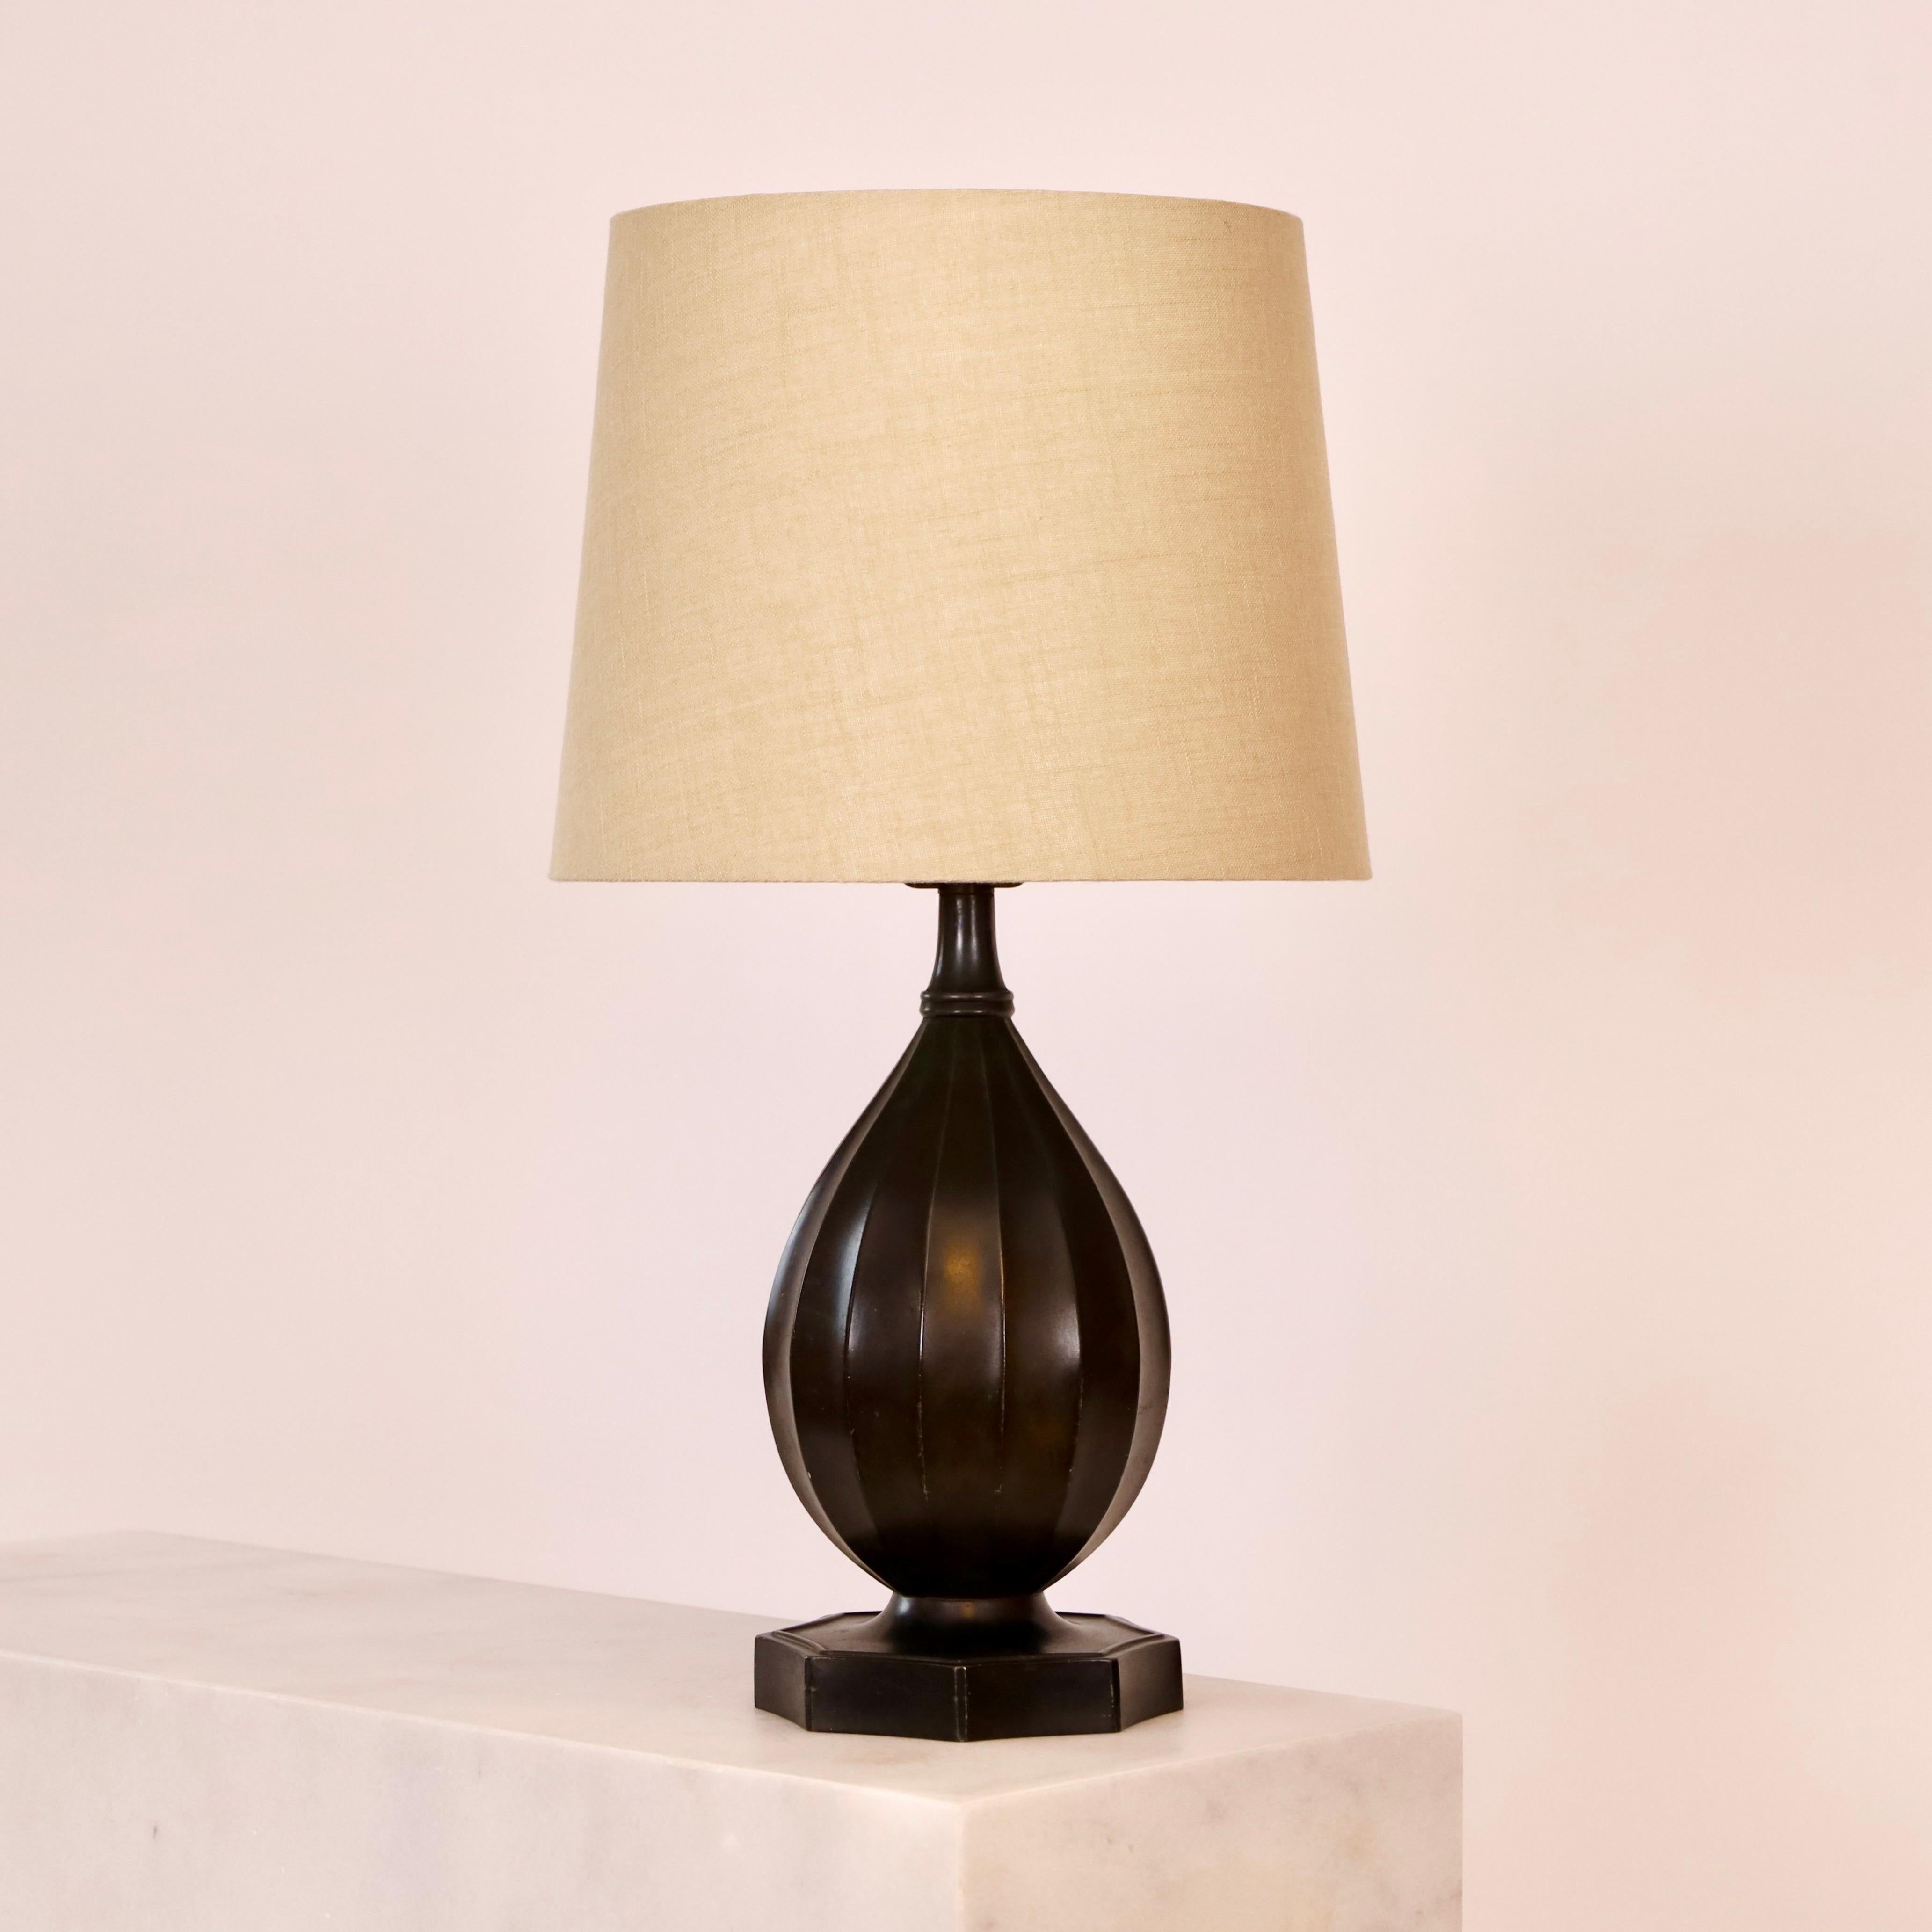 Une lampe de table intemporelle de Just Andersen en 1936 dans un rare bon état. Une pièce maîtresse pour une belle maison.  

* Lampe de bureau en métal en forme de bouteille avec des lignes verticales et un abat-jour en tissu beige.
* Designer :